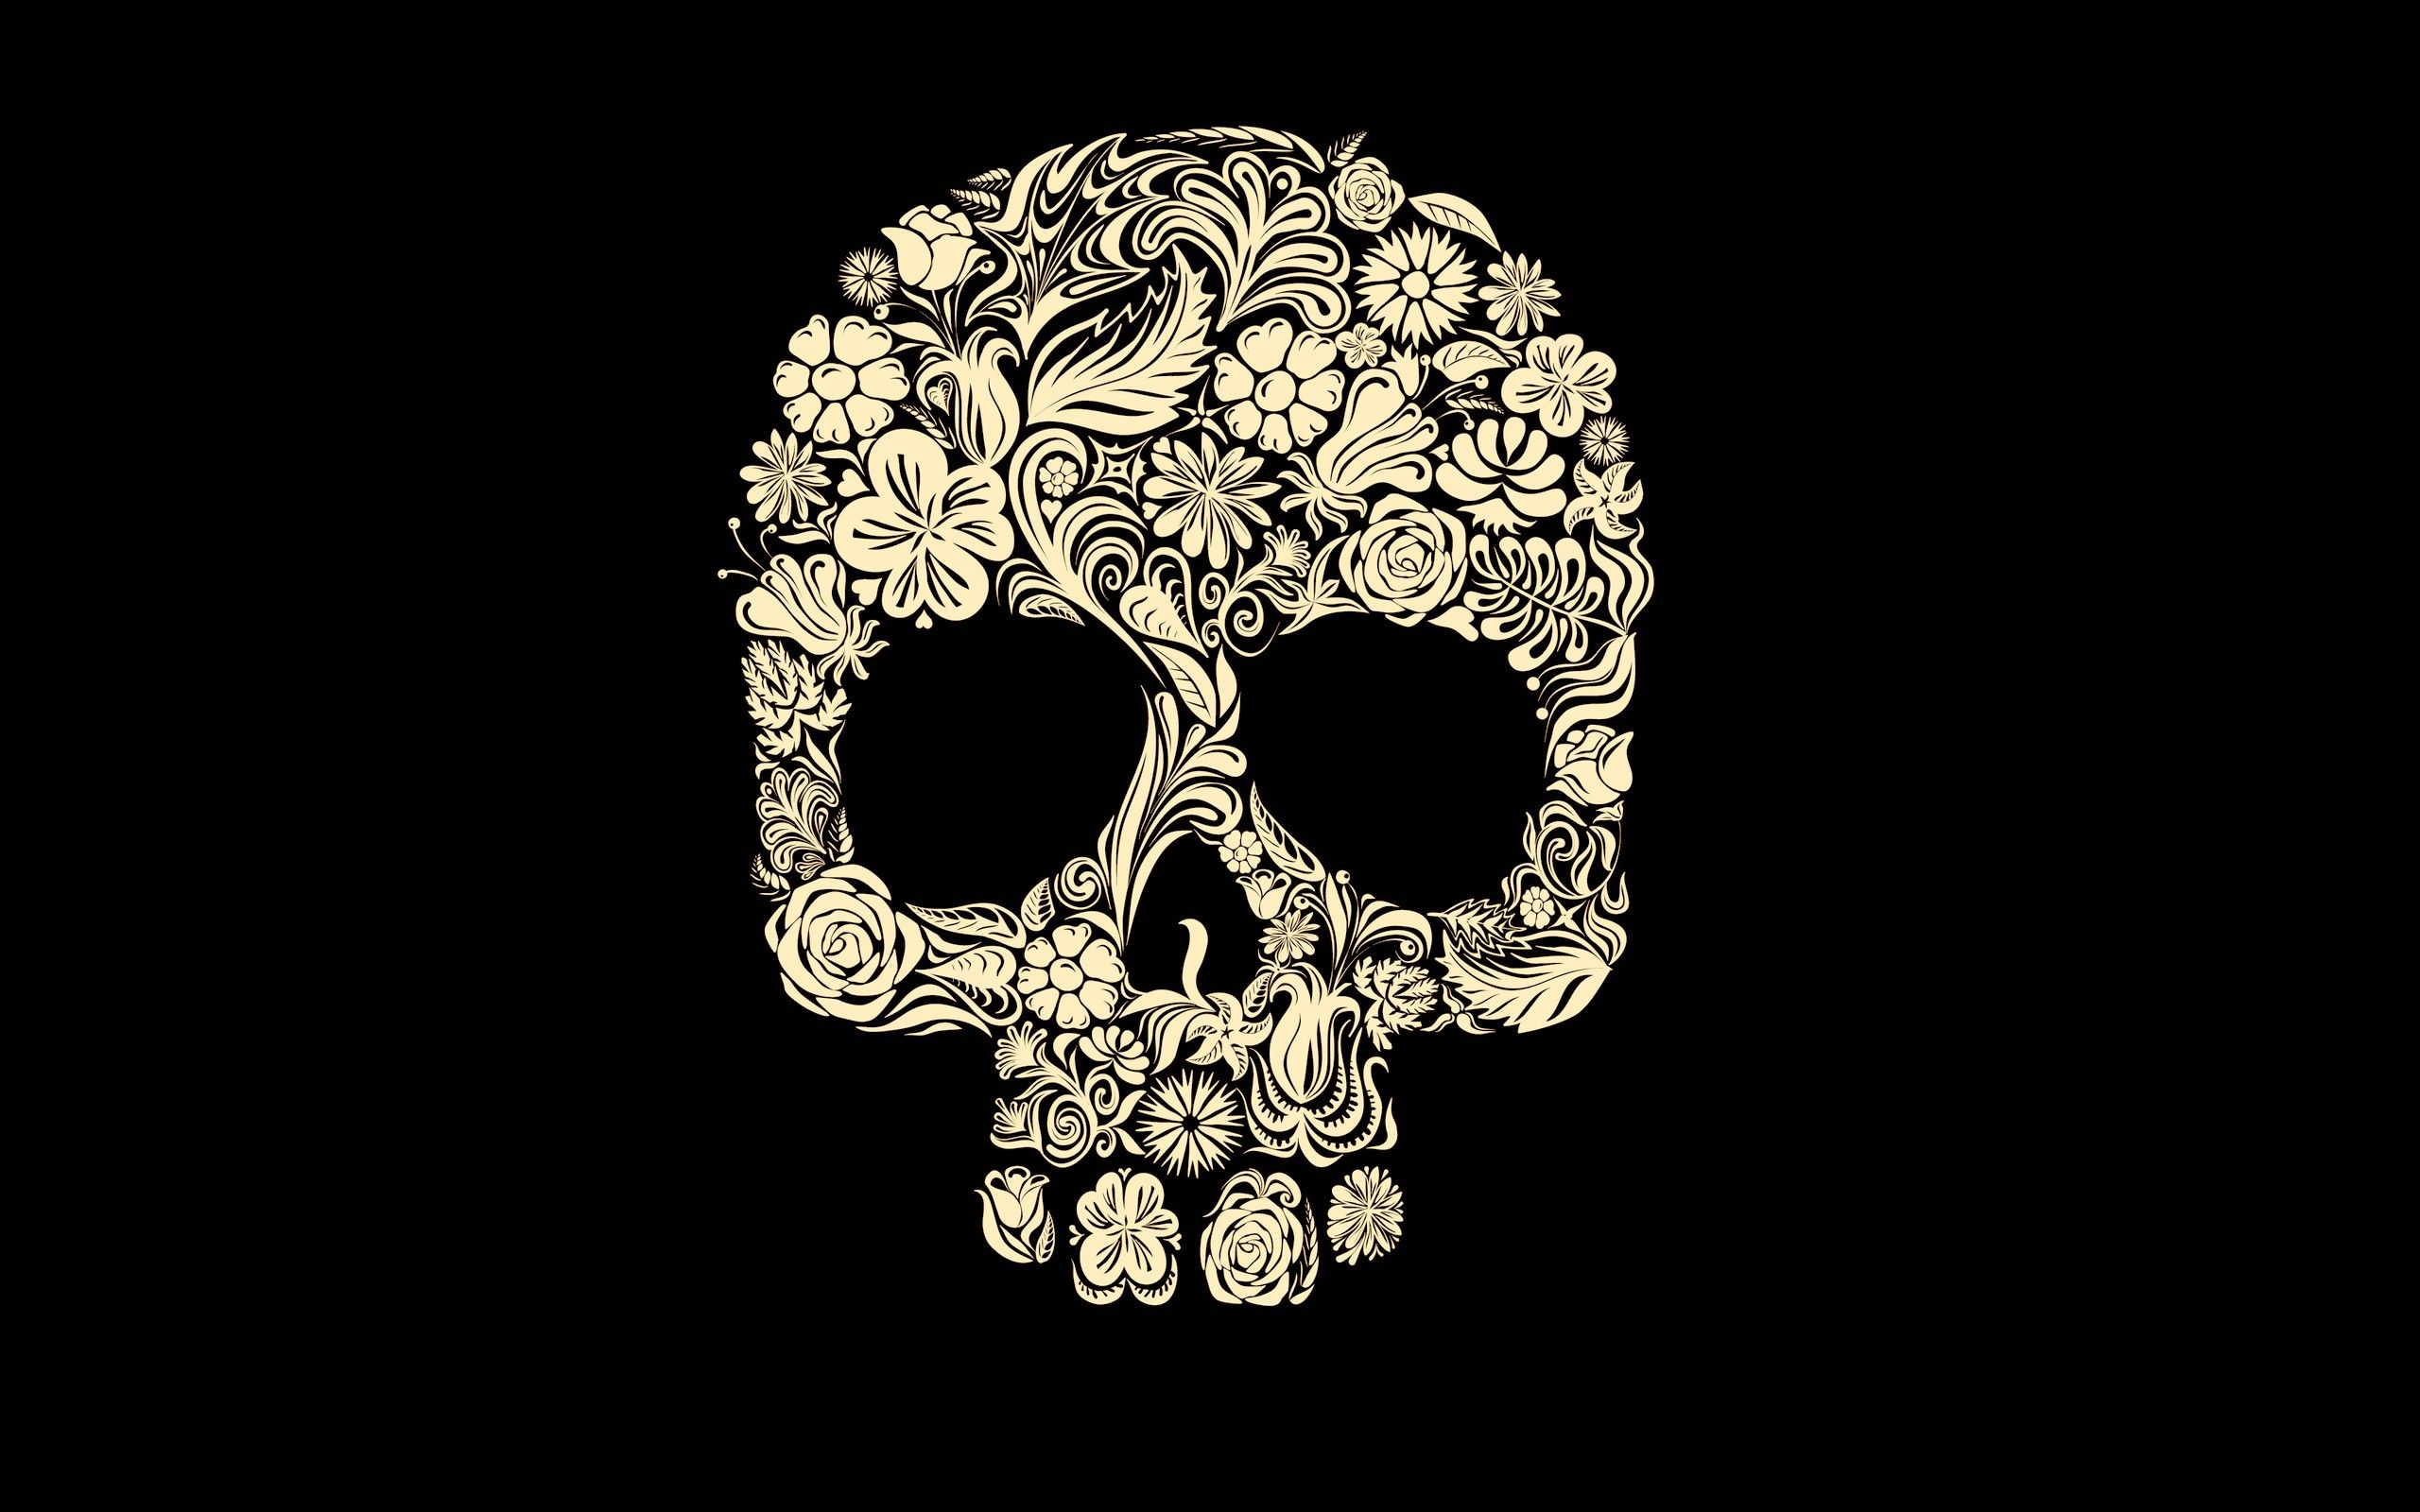 Free download Dark Skull Wallpaper 2560x1600 Dark Skull 2560x1600